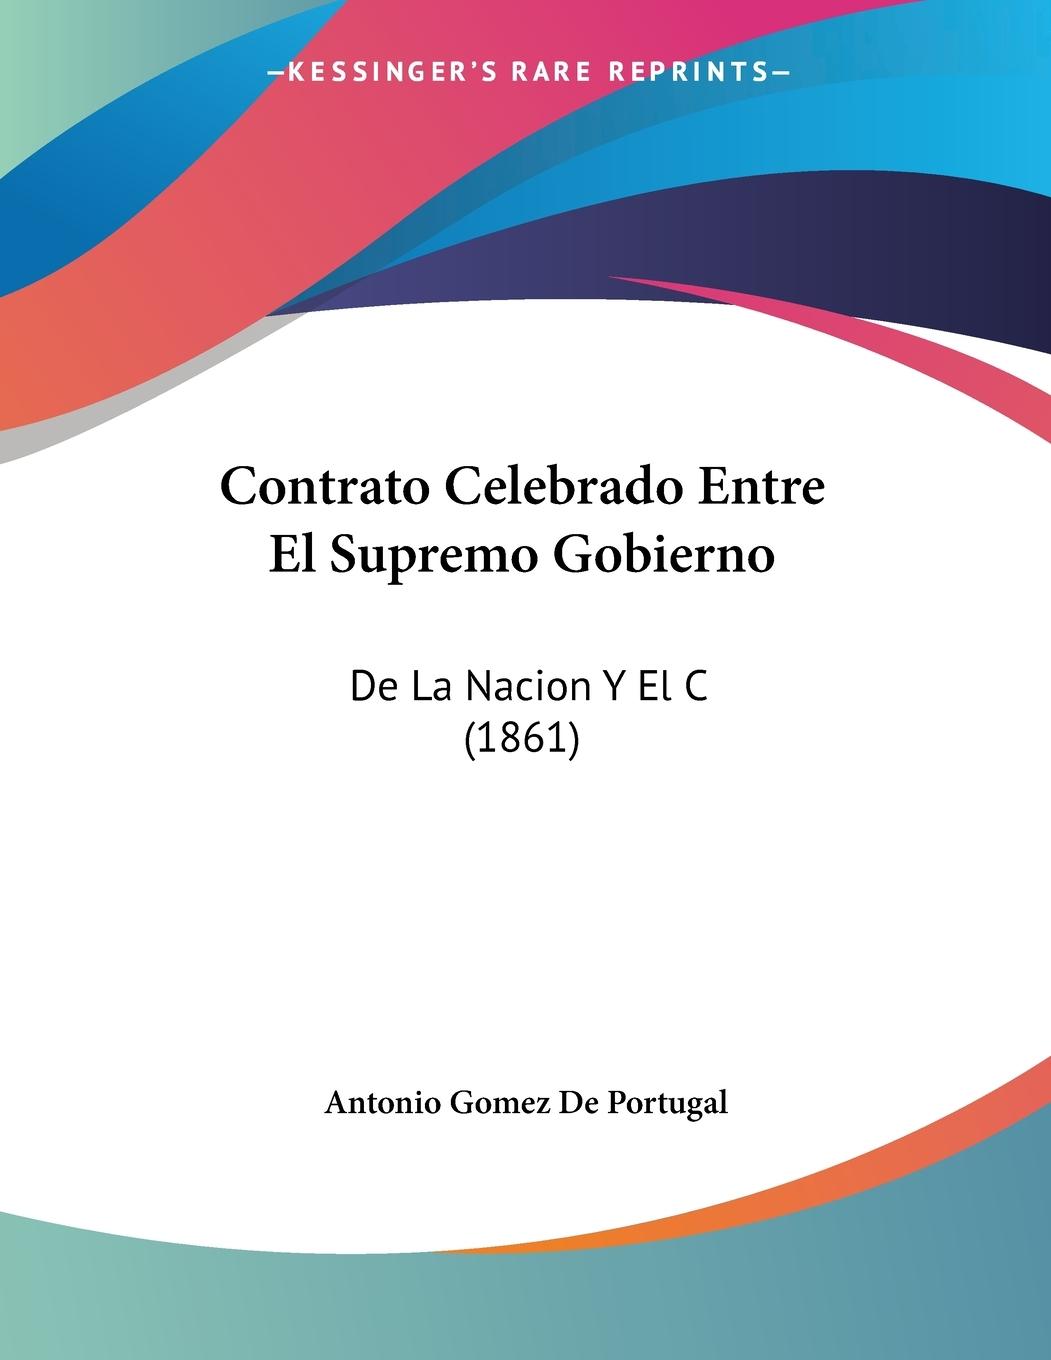 Contrato Celebrado Entre El Supremo Gobierno - De Portugal, Antonio Gomez